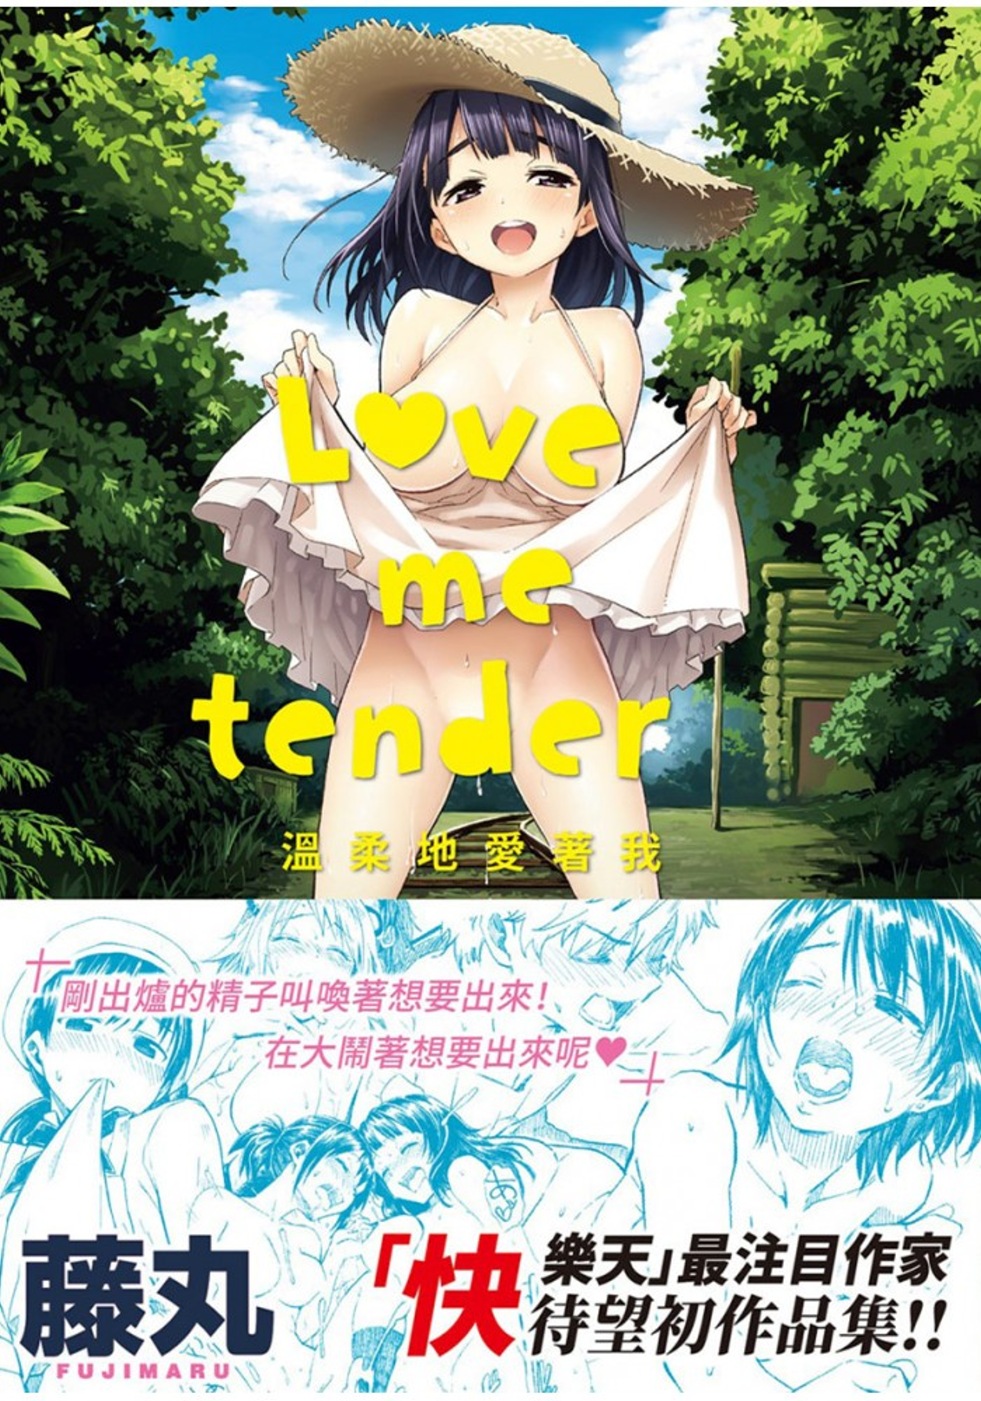 Love me tender ...